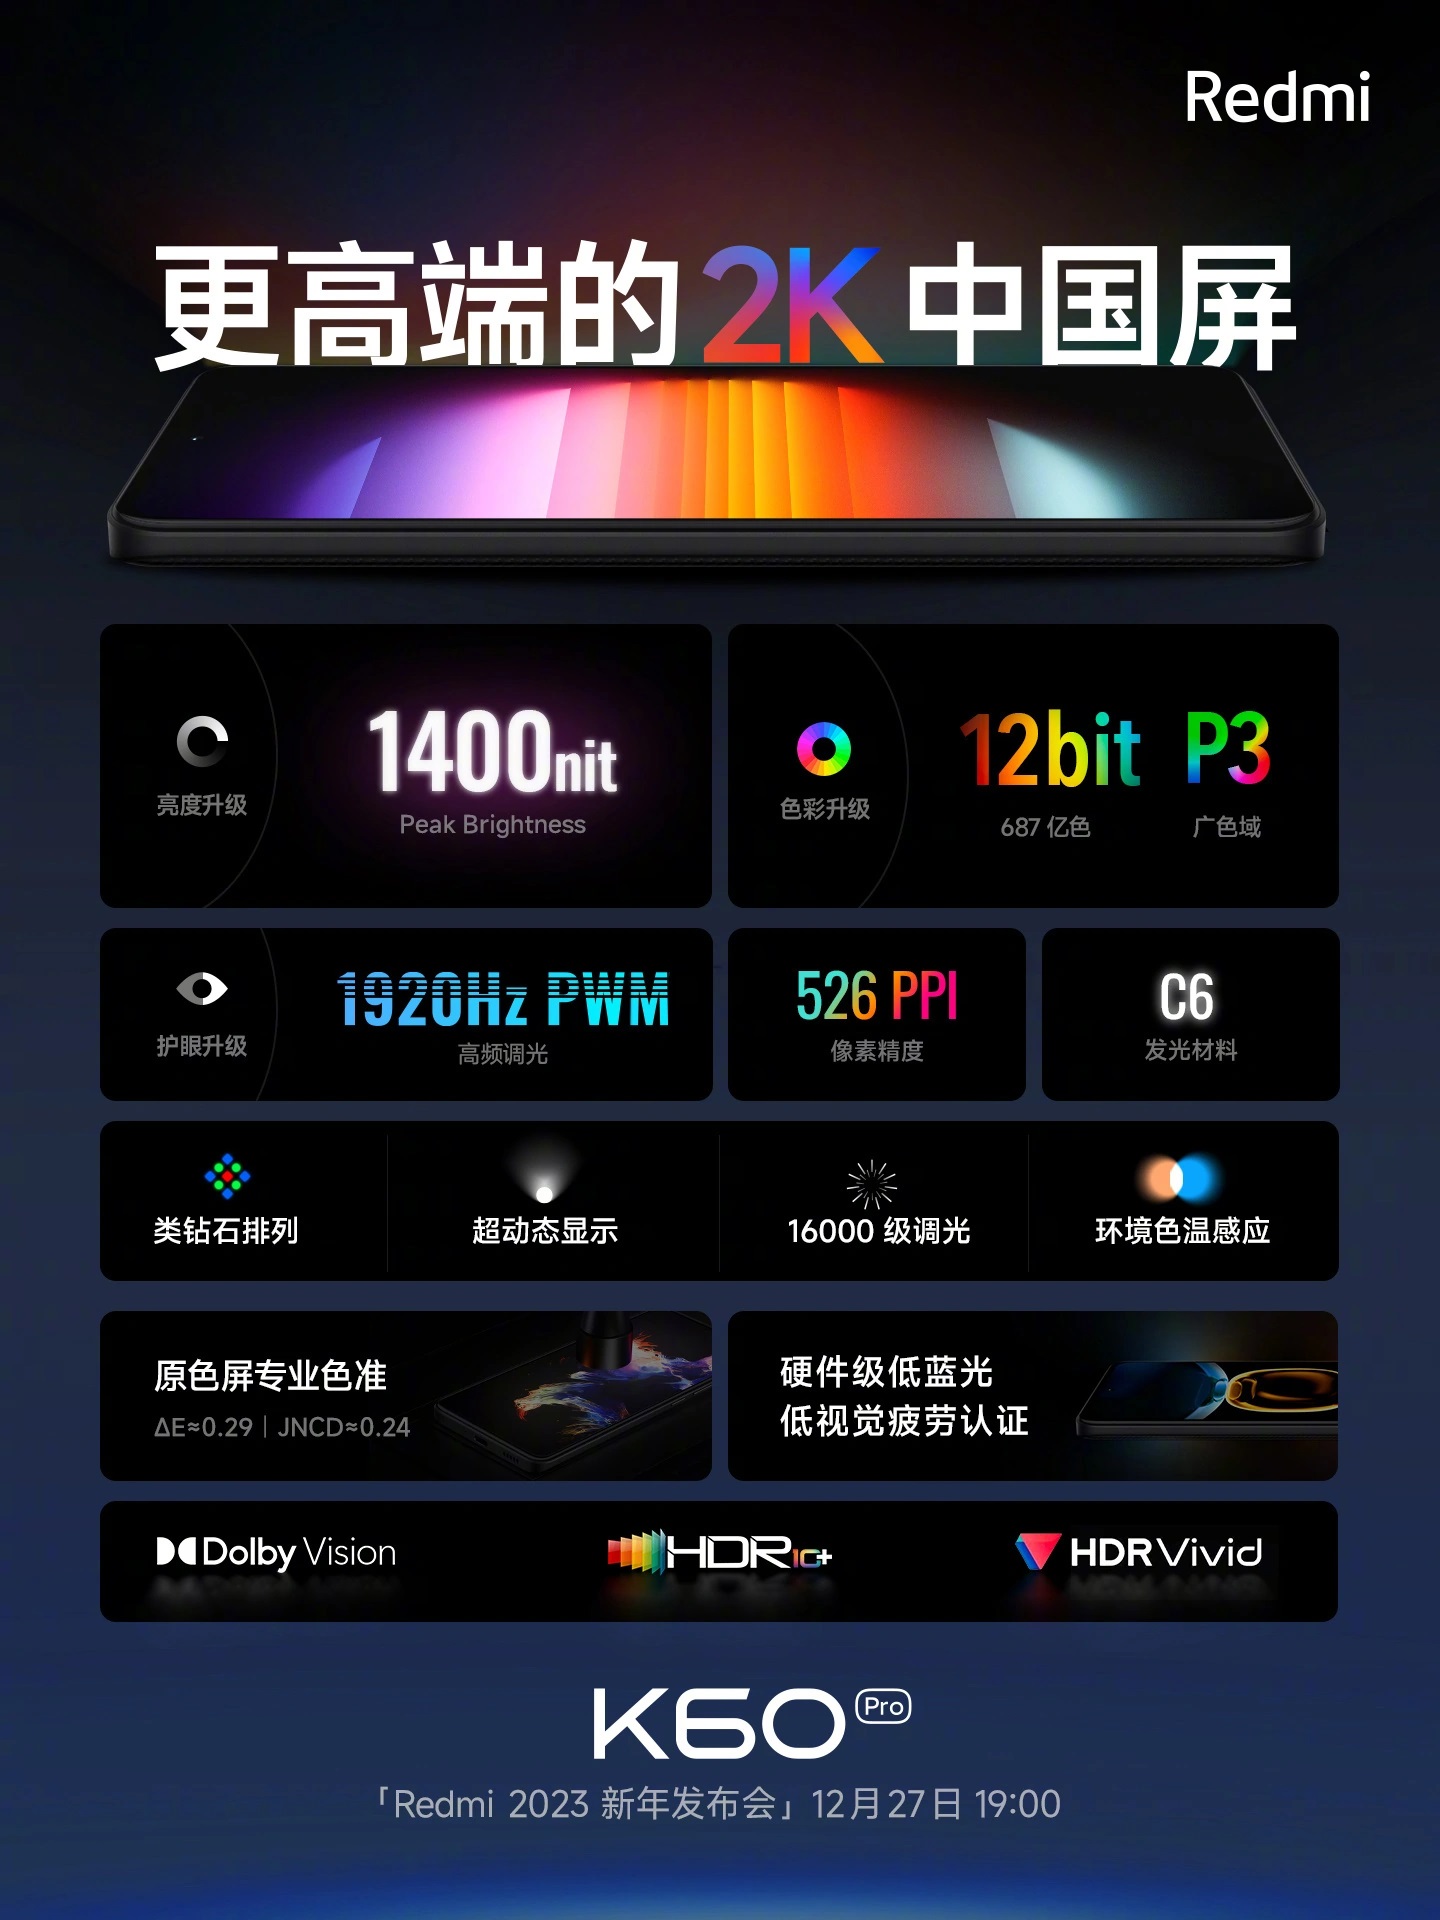 Dettagli del display di Redmi K60 Pro